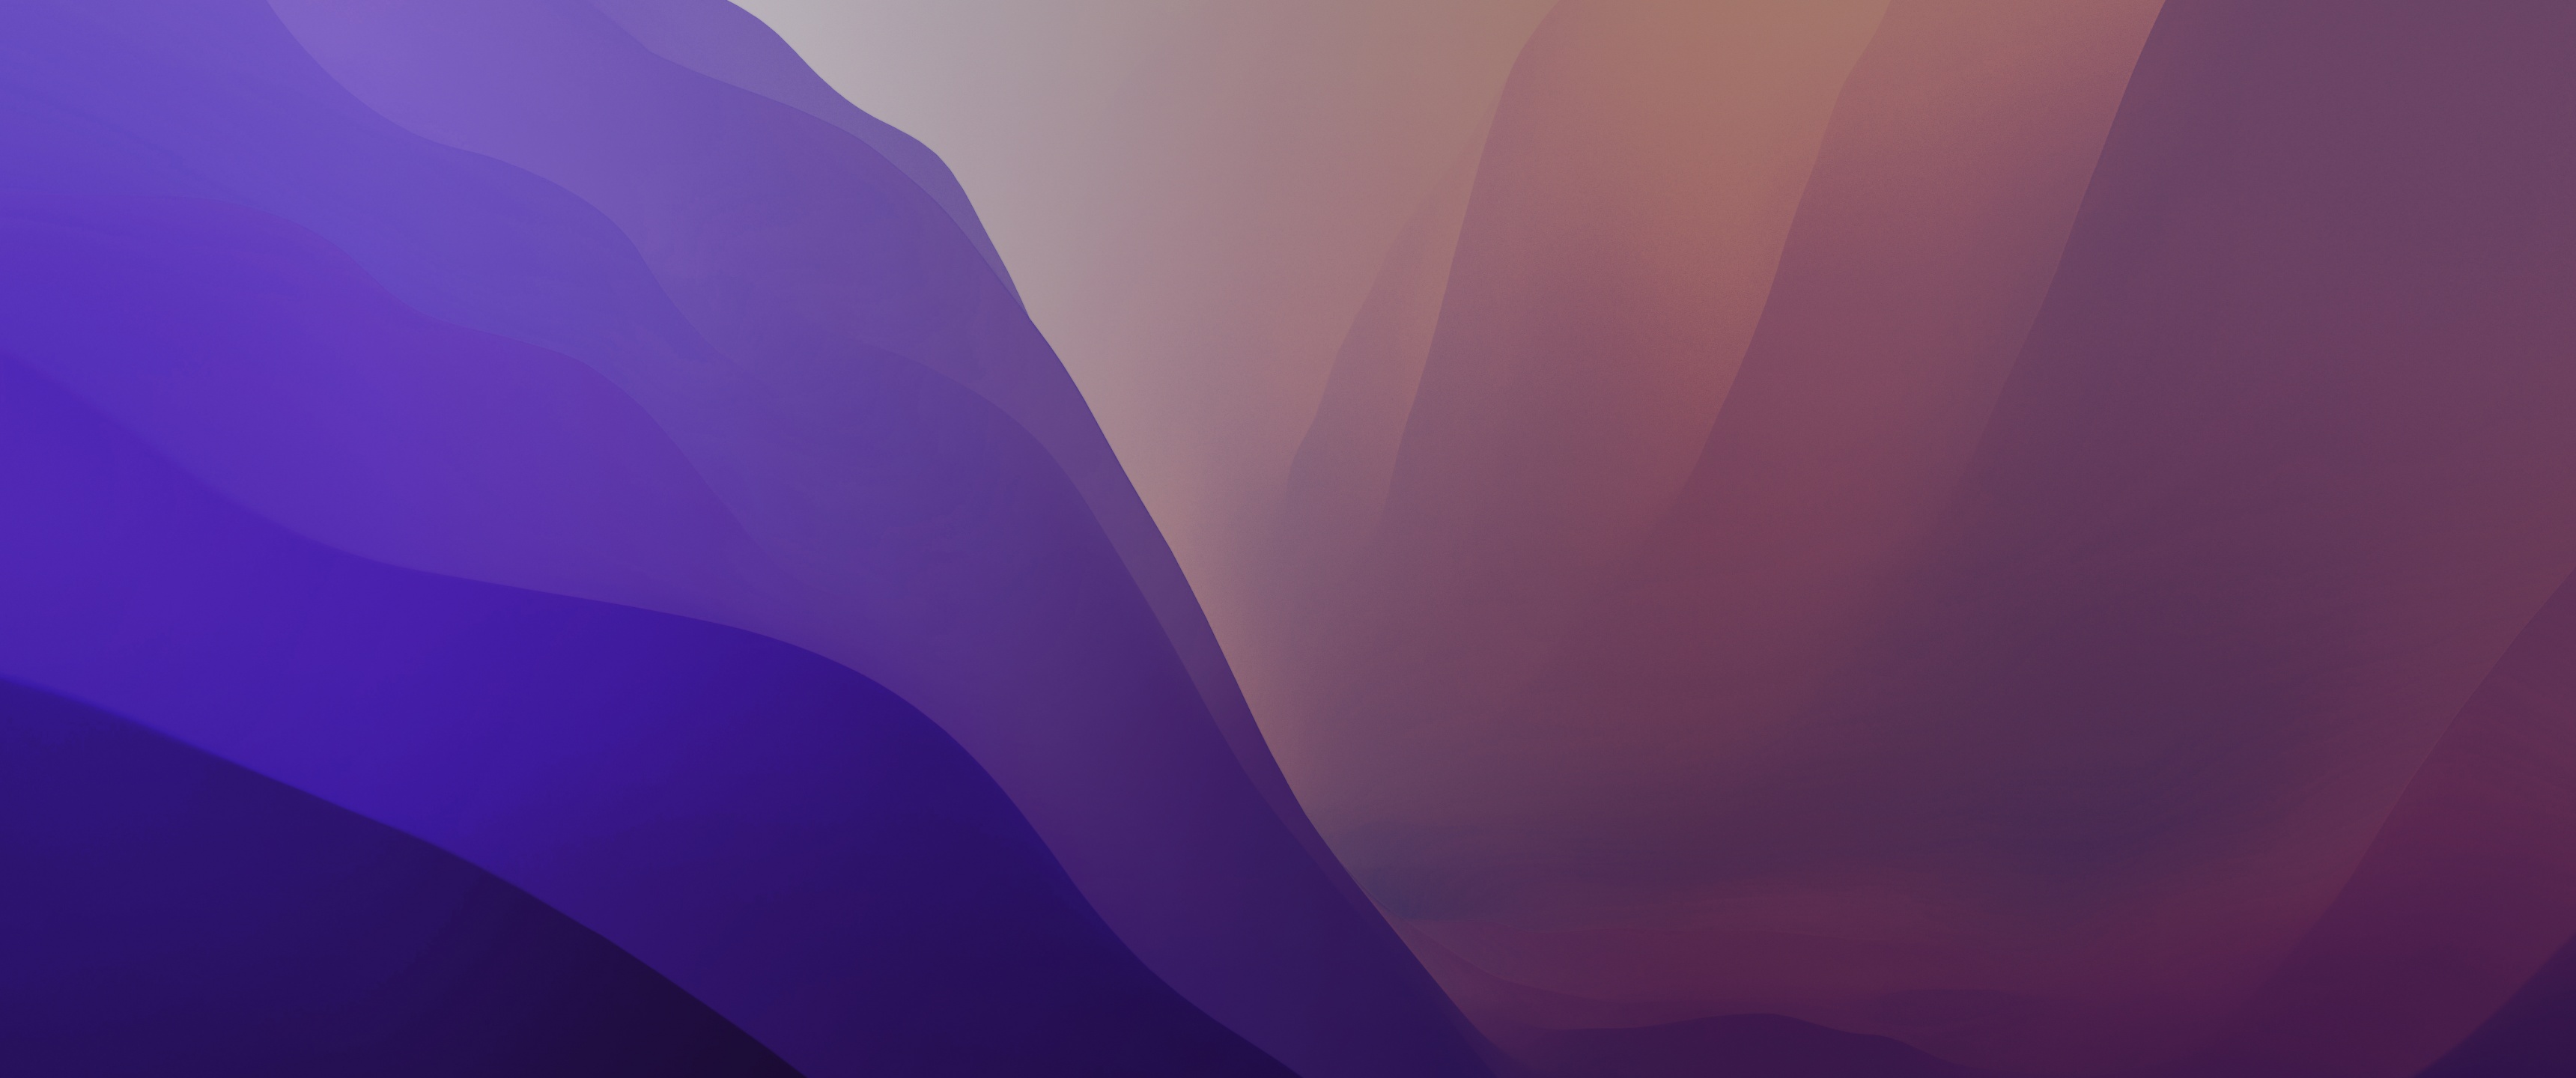 Hình nền macOS Monterey màu tím nhạt 5K đẹp tuyệt vời với độ phân giải cao, giúp bạn tận hưởng sự lôi cuốn và tinh tế của nó. Với màu tím nhạt tinh tế, hình nền này sẽ tạo nên cảm giác thanh lịch và sang trọng khiến khán giả không thể rời mắt.